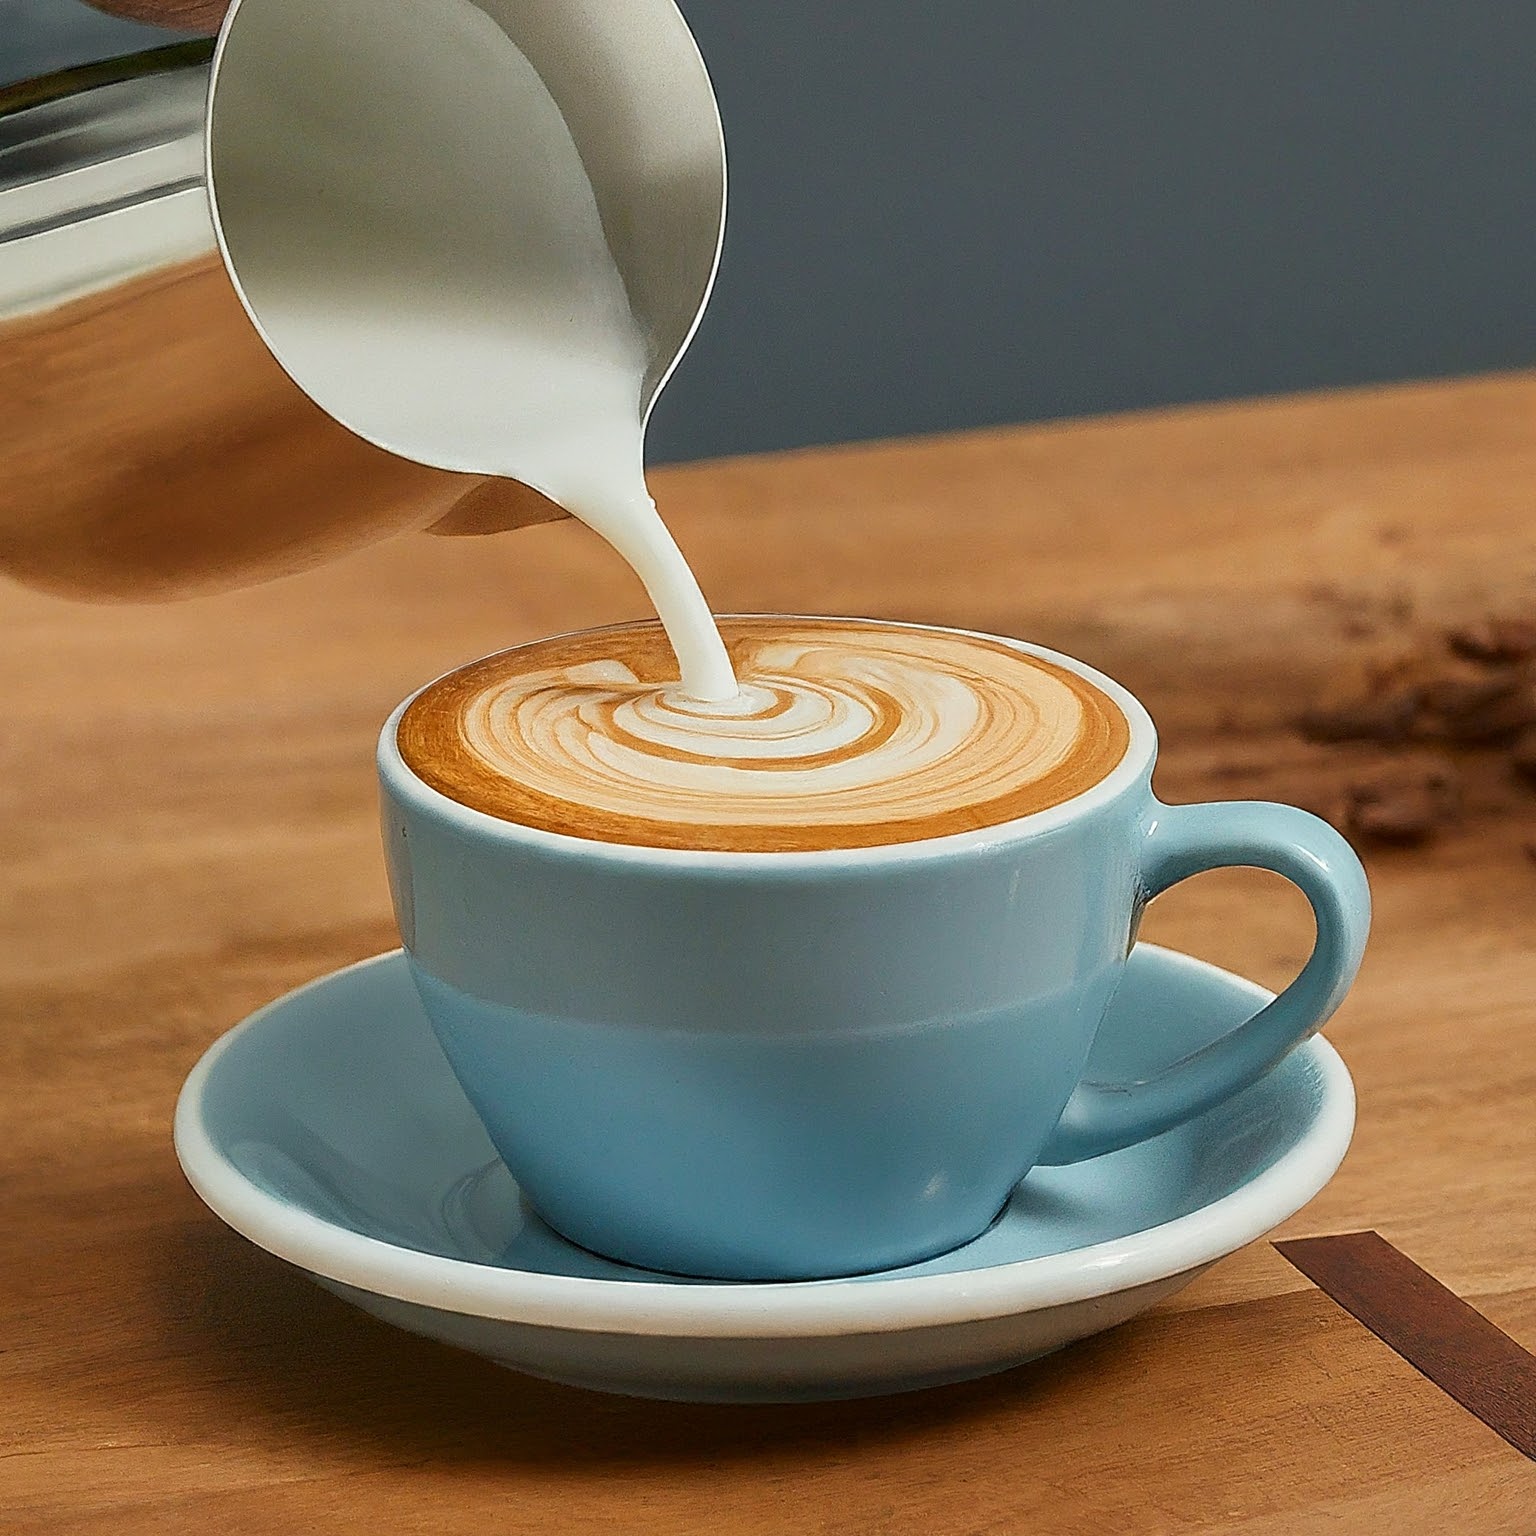 Google Doodle celebrates flat white coffee beverage with animated illustration